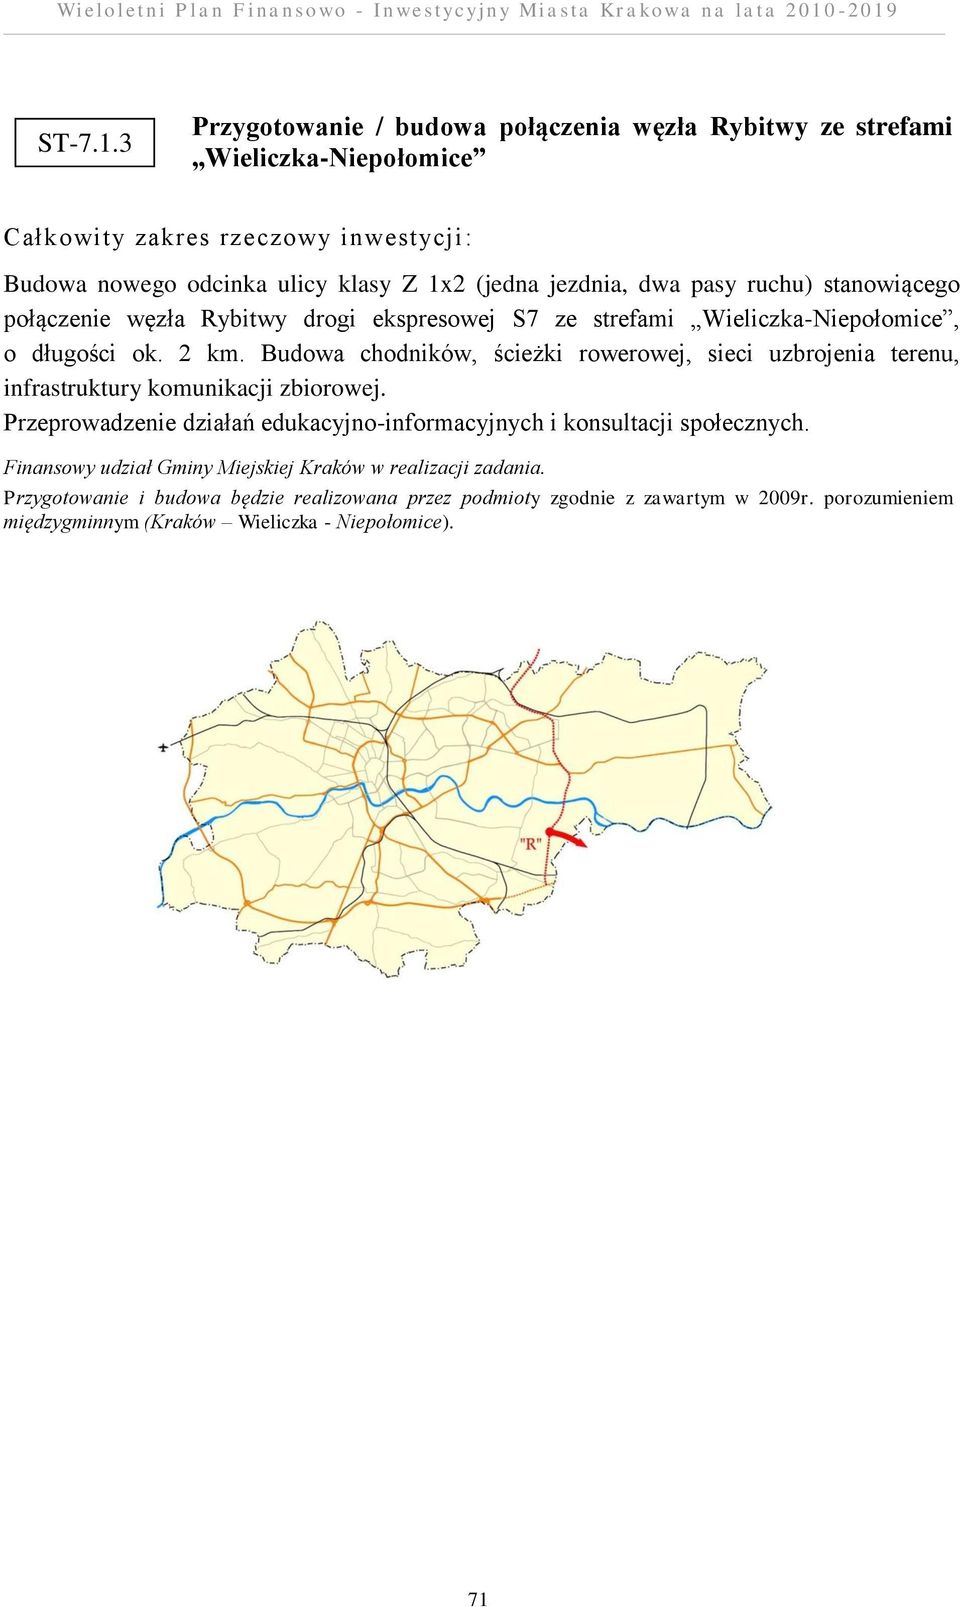 stanowiącego połączenie węzła Rybitwy drogi ekspresowej S7 ze strefami Wieliczka-Niepołomice, o długości ok. 2 km.